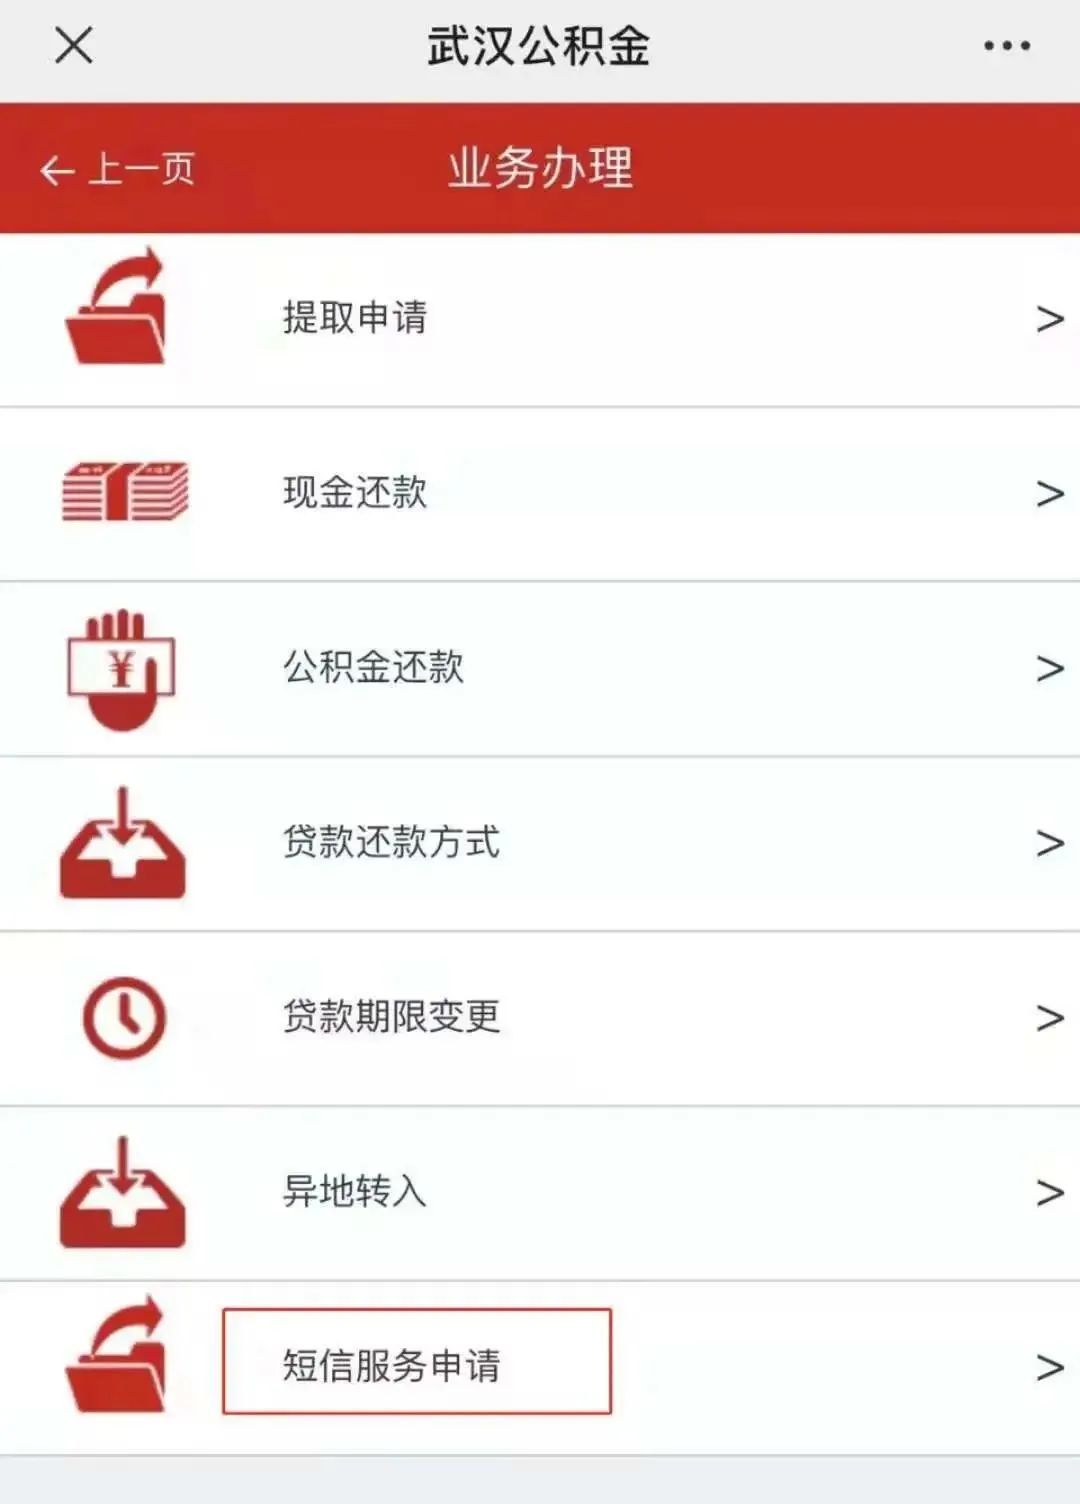 武汉公积金短信提醒网上开通流程（详细图解）